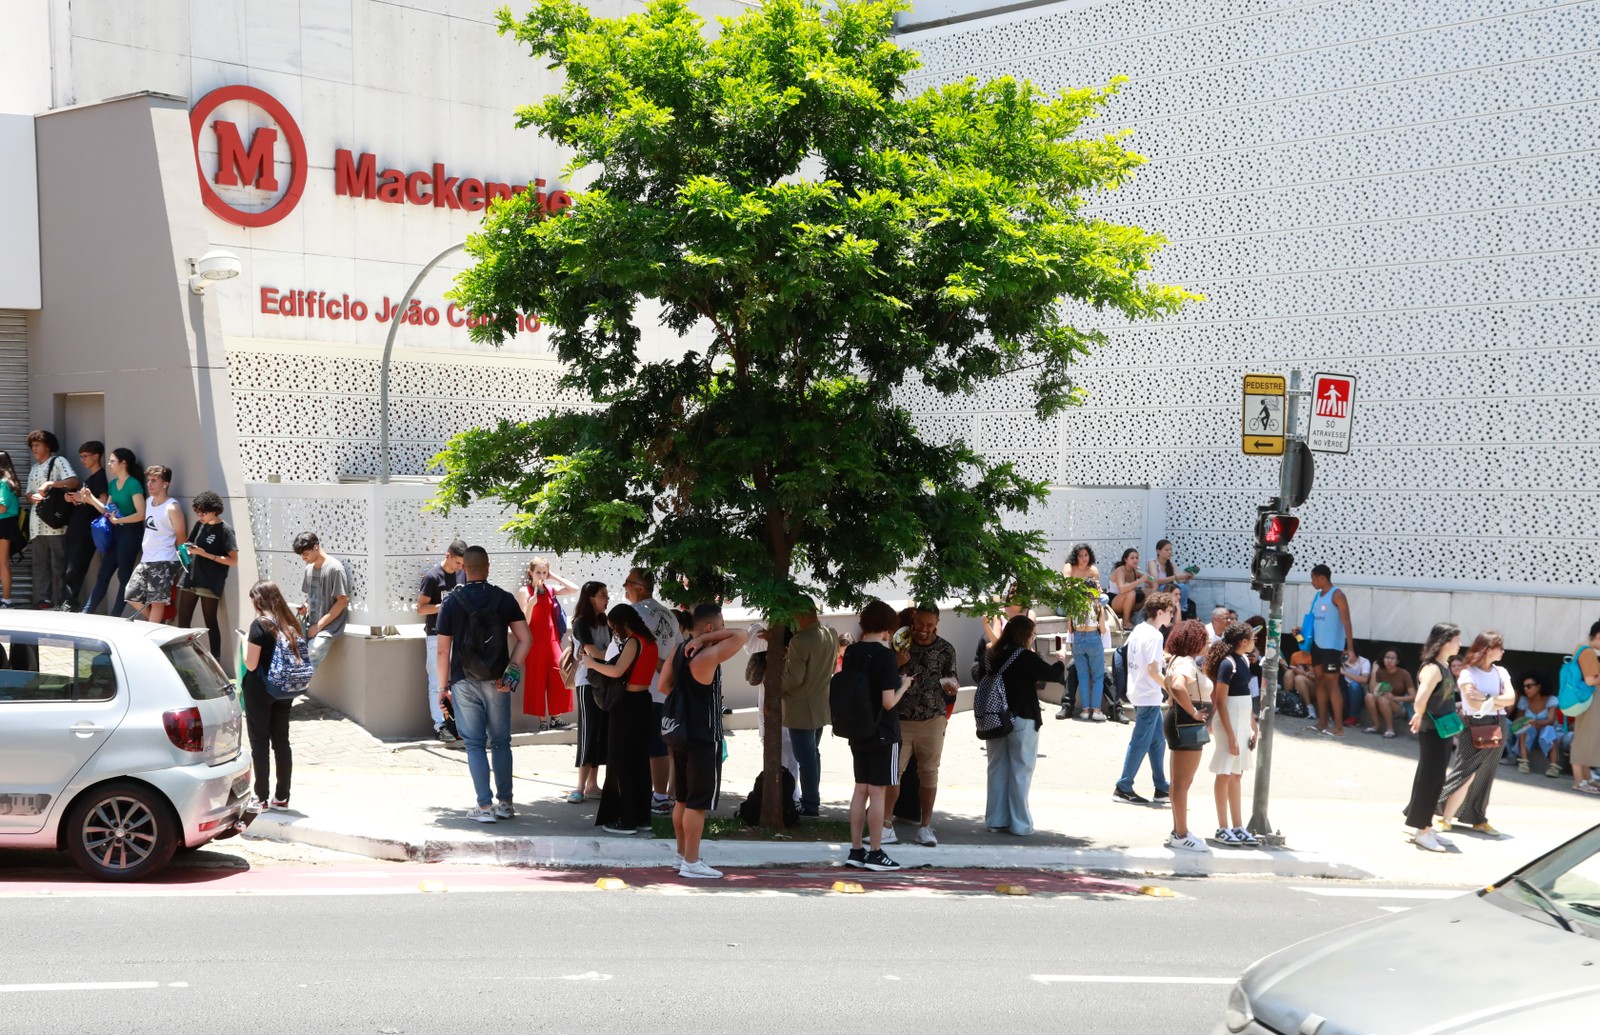 Para se refrescar do calor, candidatos buscaram refúgio na sombra de uma árvore até os portões abrirem — Foto: Edilson Dantas/Agência O Globo